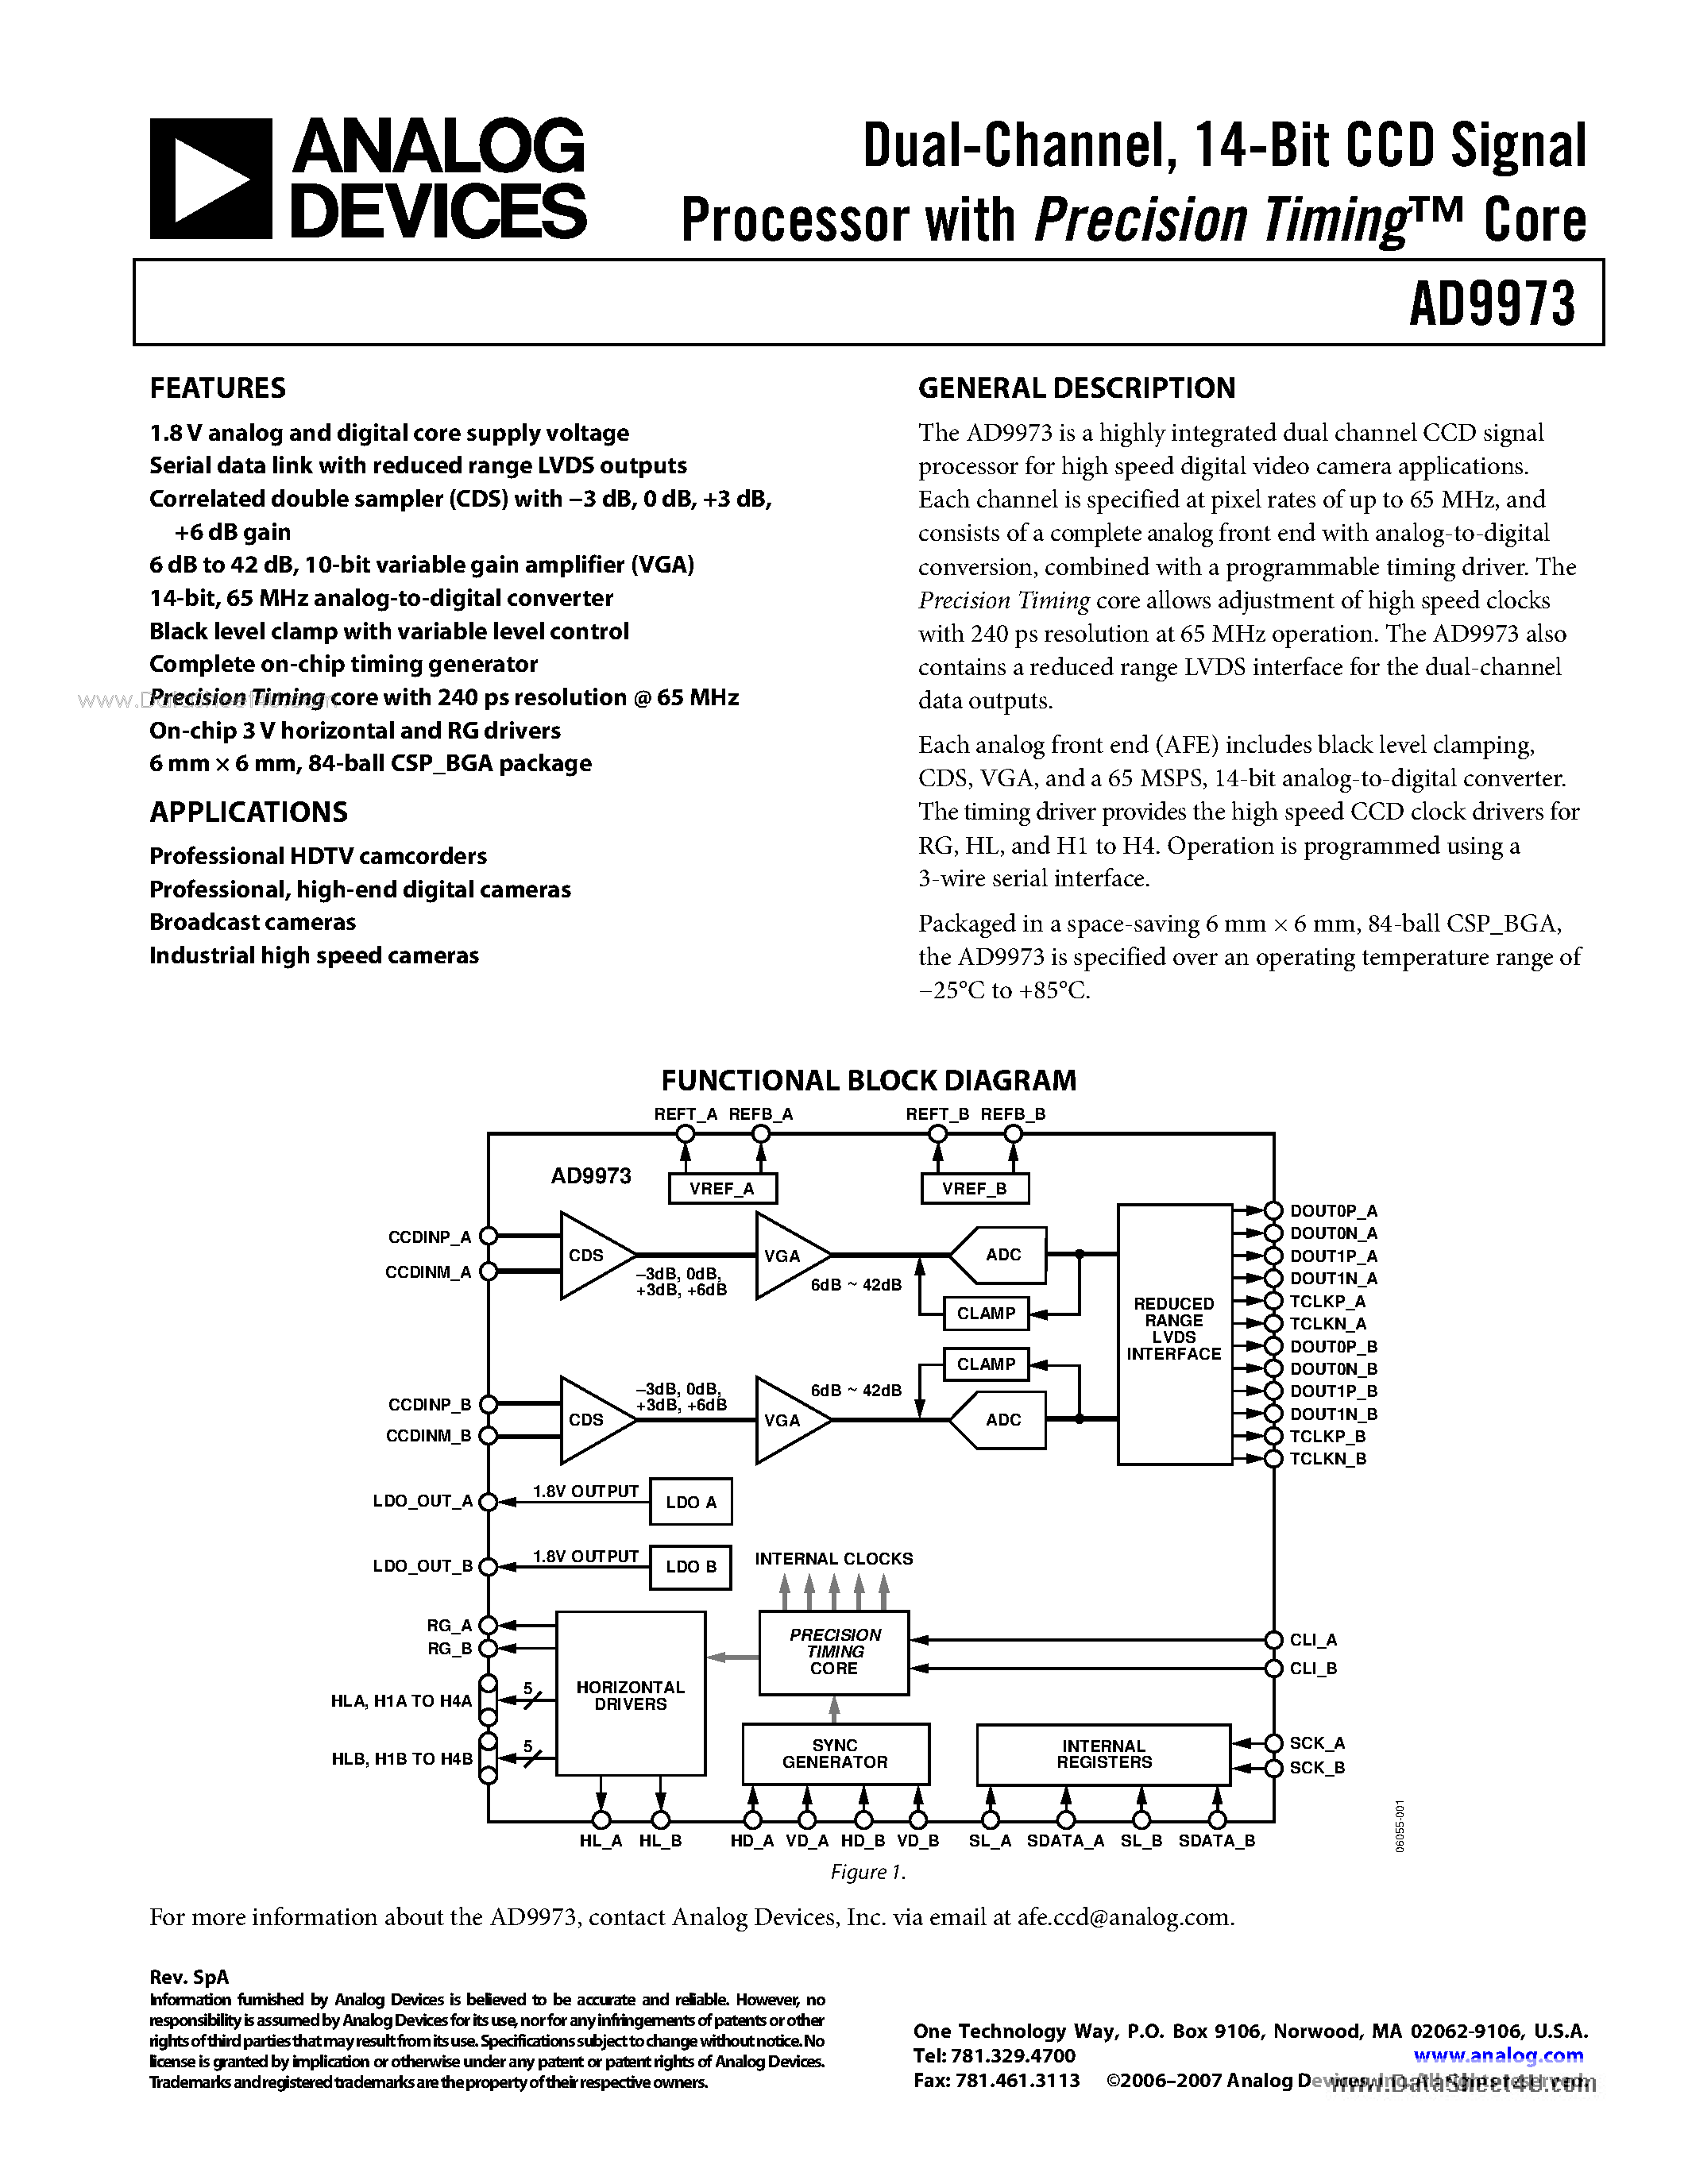 Даташит AD9973 - 14-Bit CCD Signal Processor страница 1